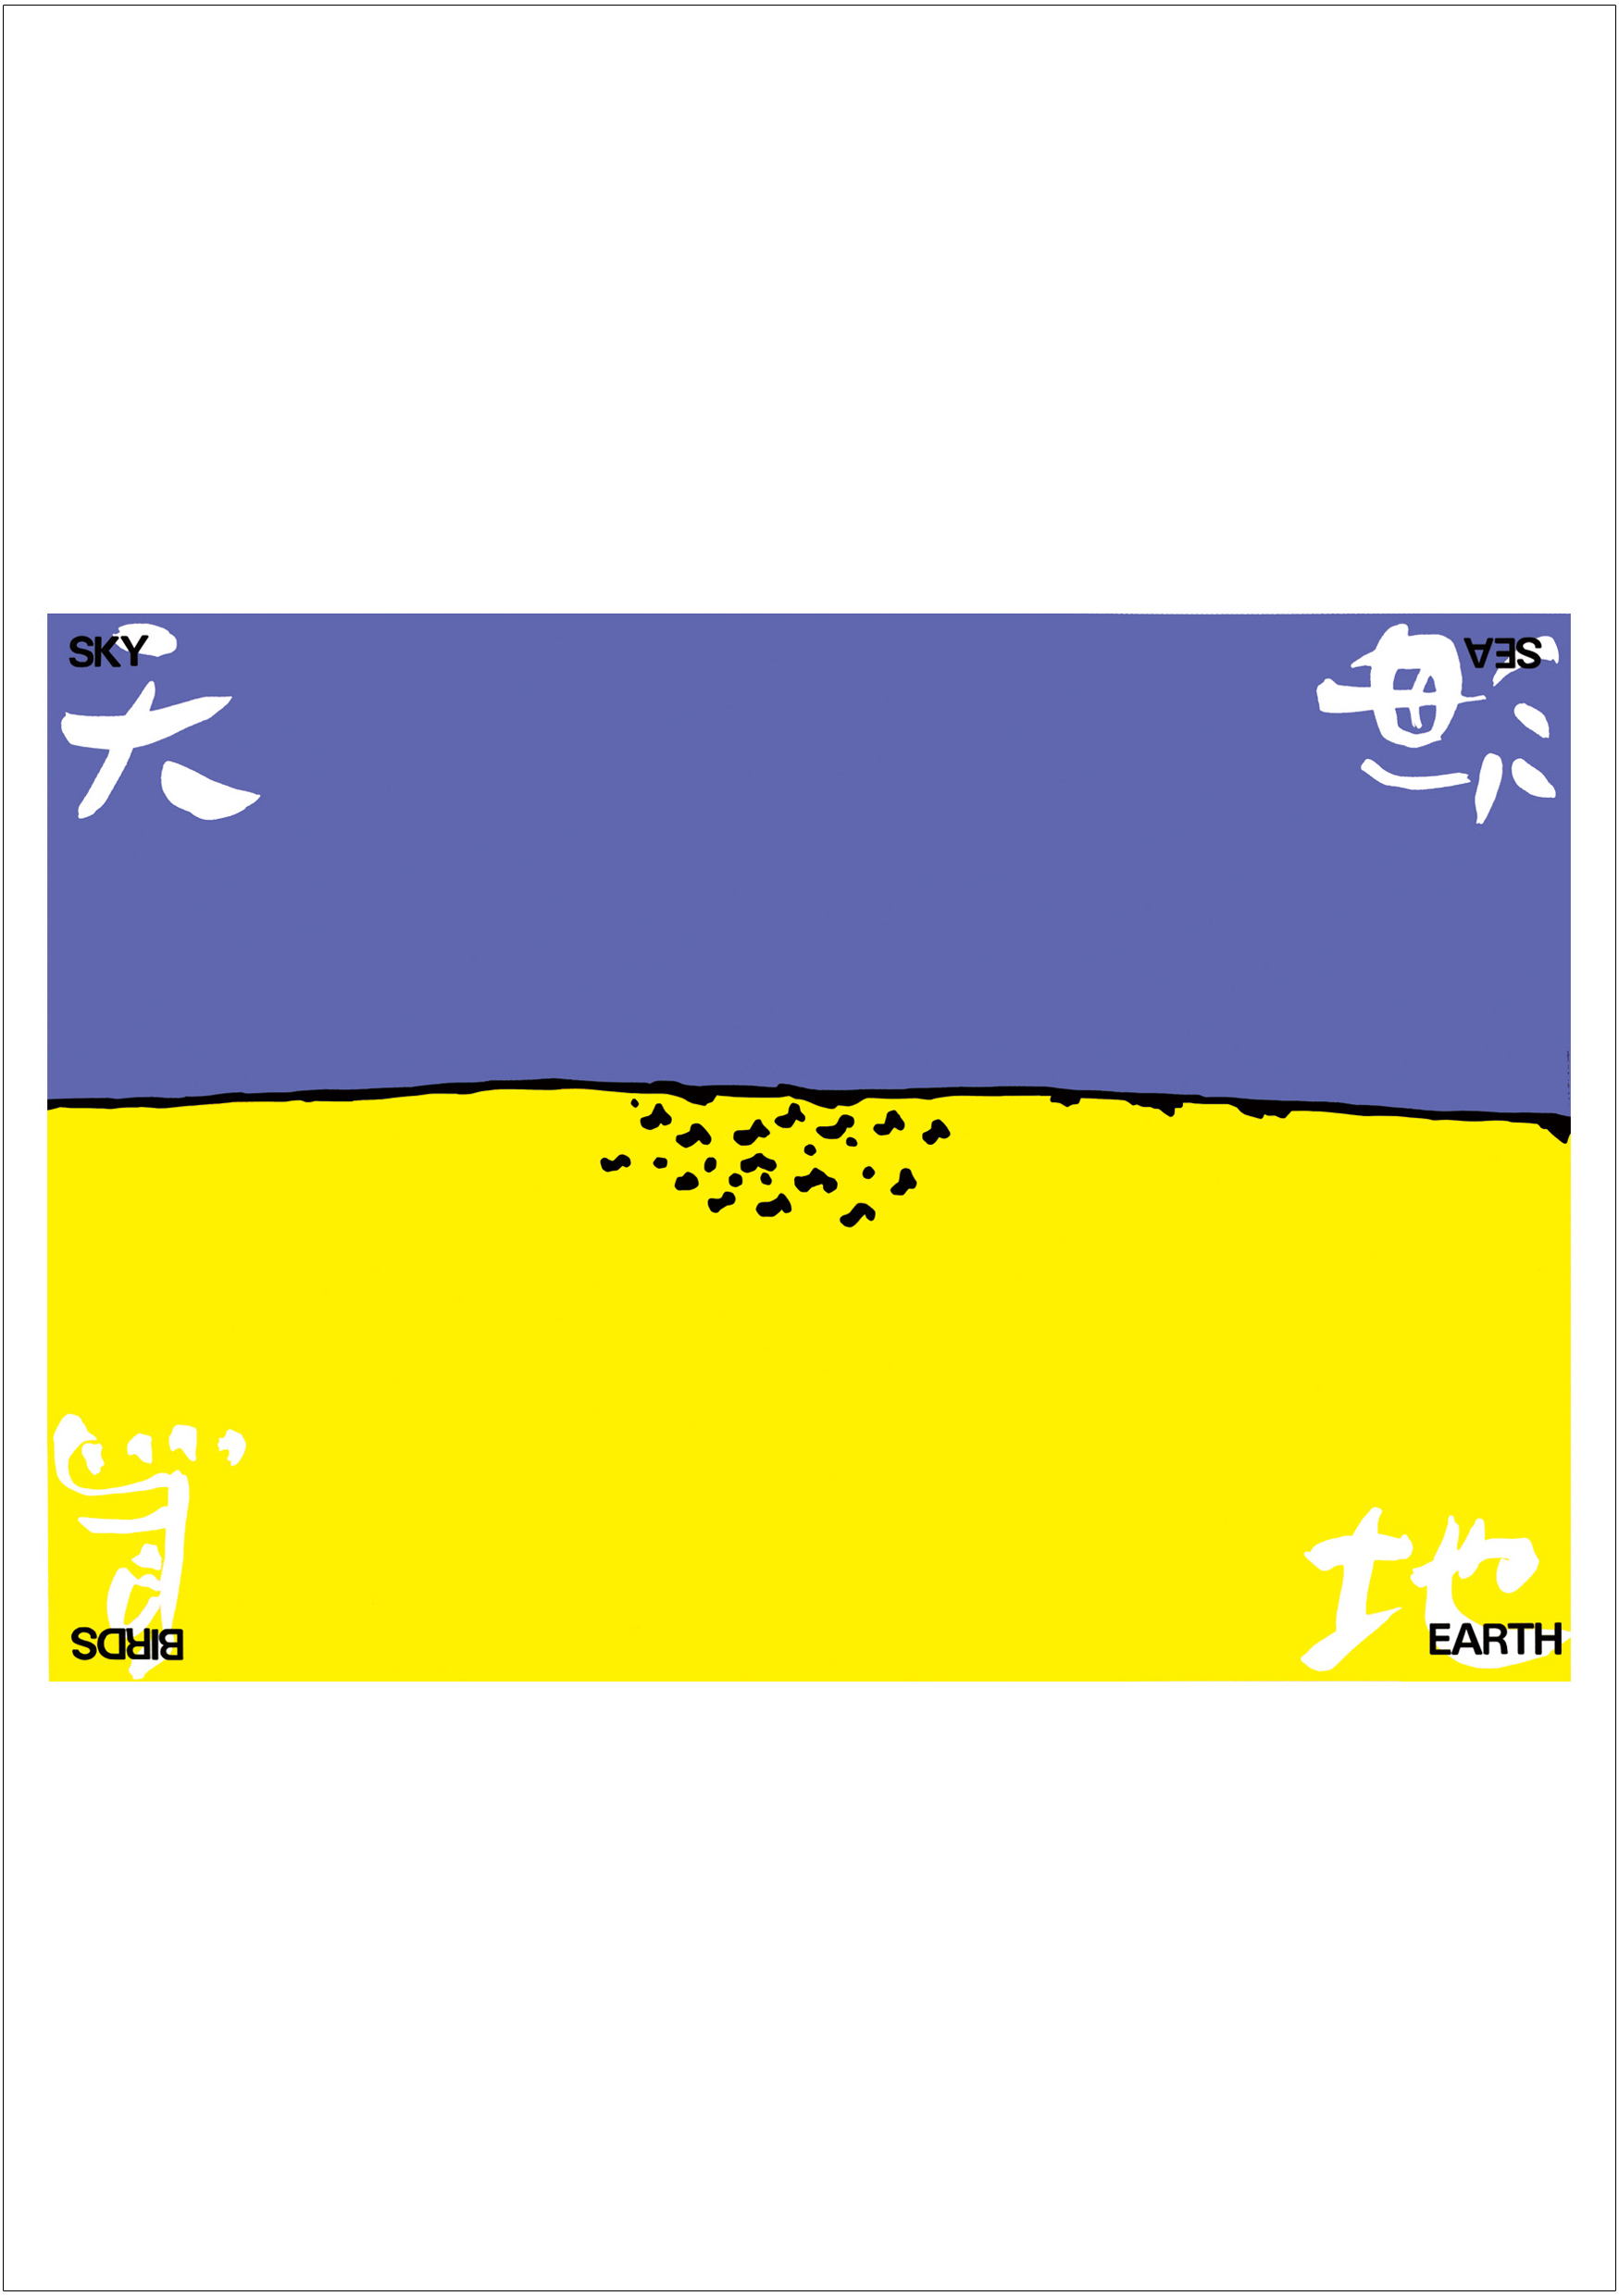 ポスターアーティスト秋山孝が1985年に制作したアートカード「アートカード ポスター 1985 01」